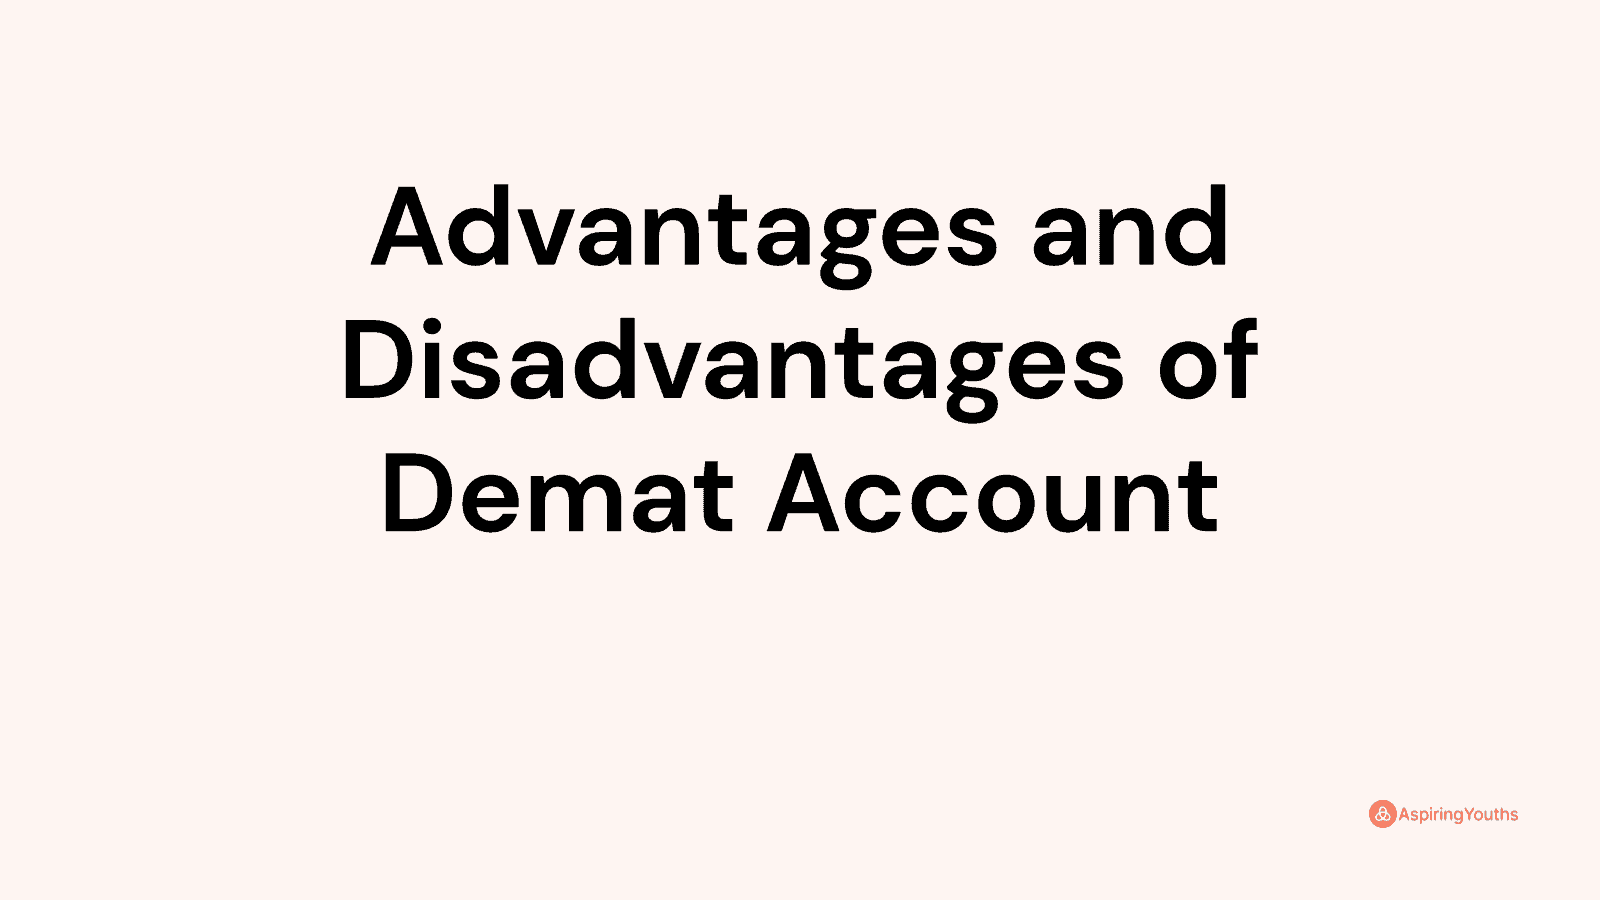 Advantages and disadvantages of Demat Account